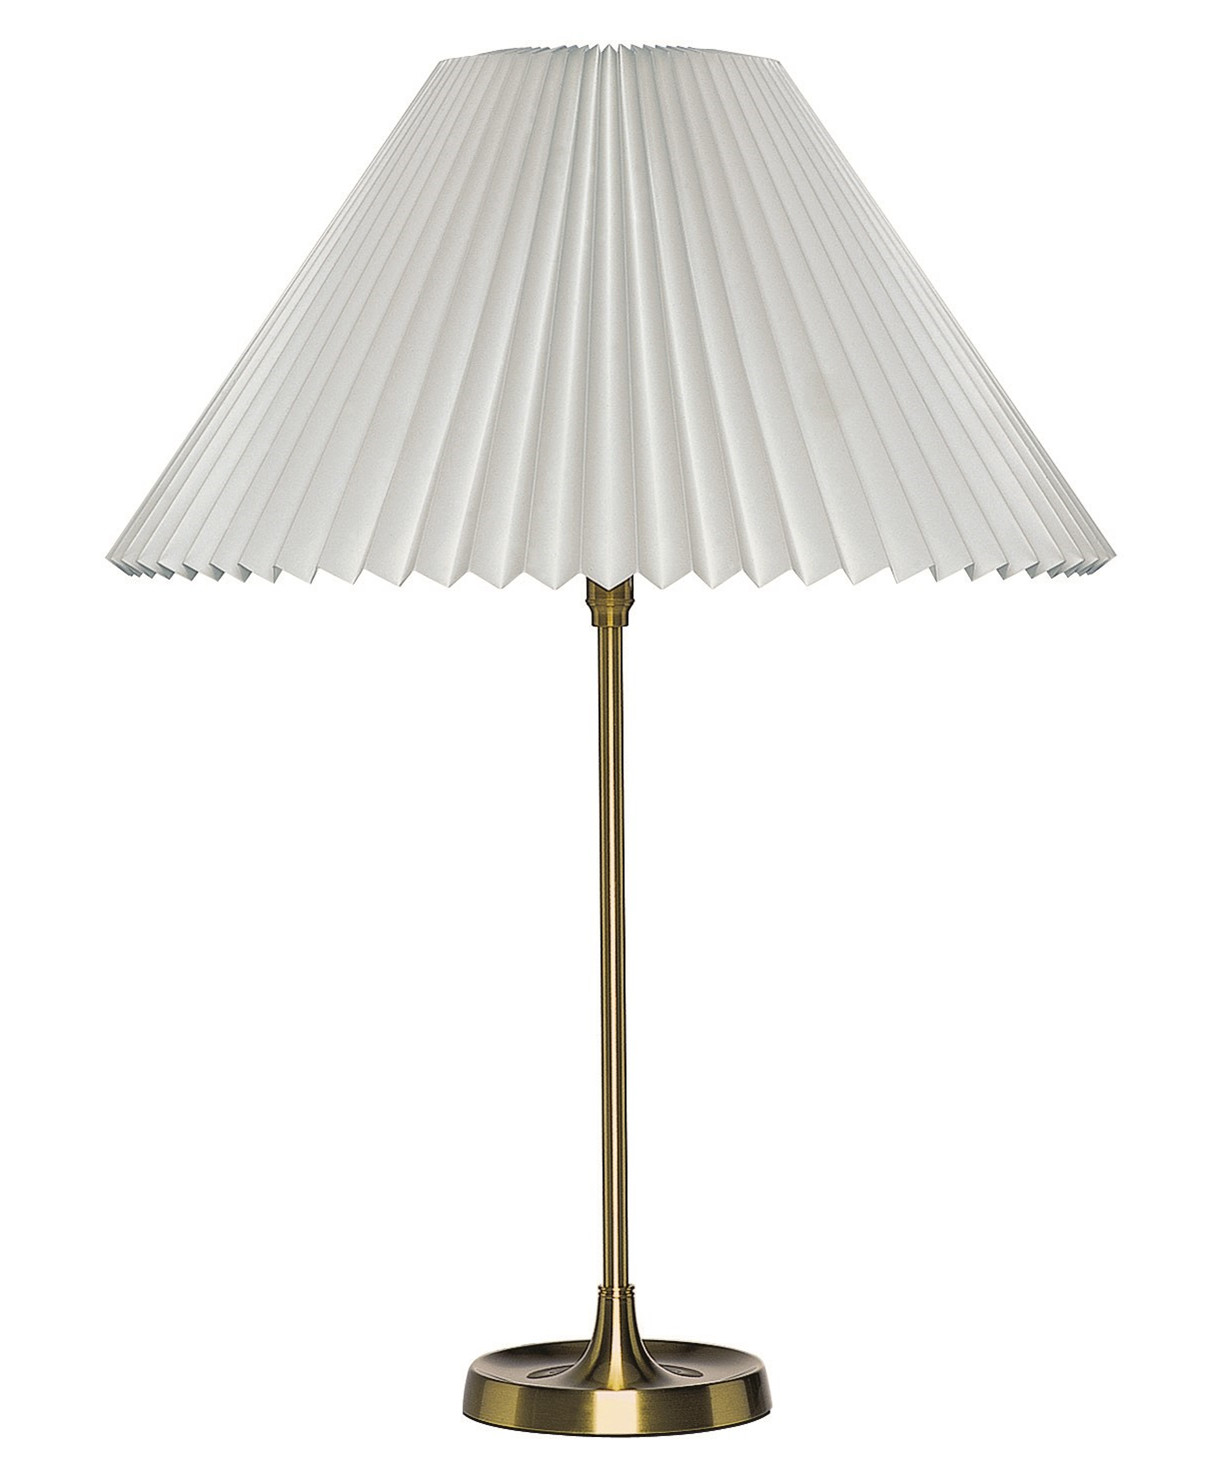 Le Klint - 307 Bordlampe